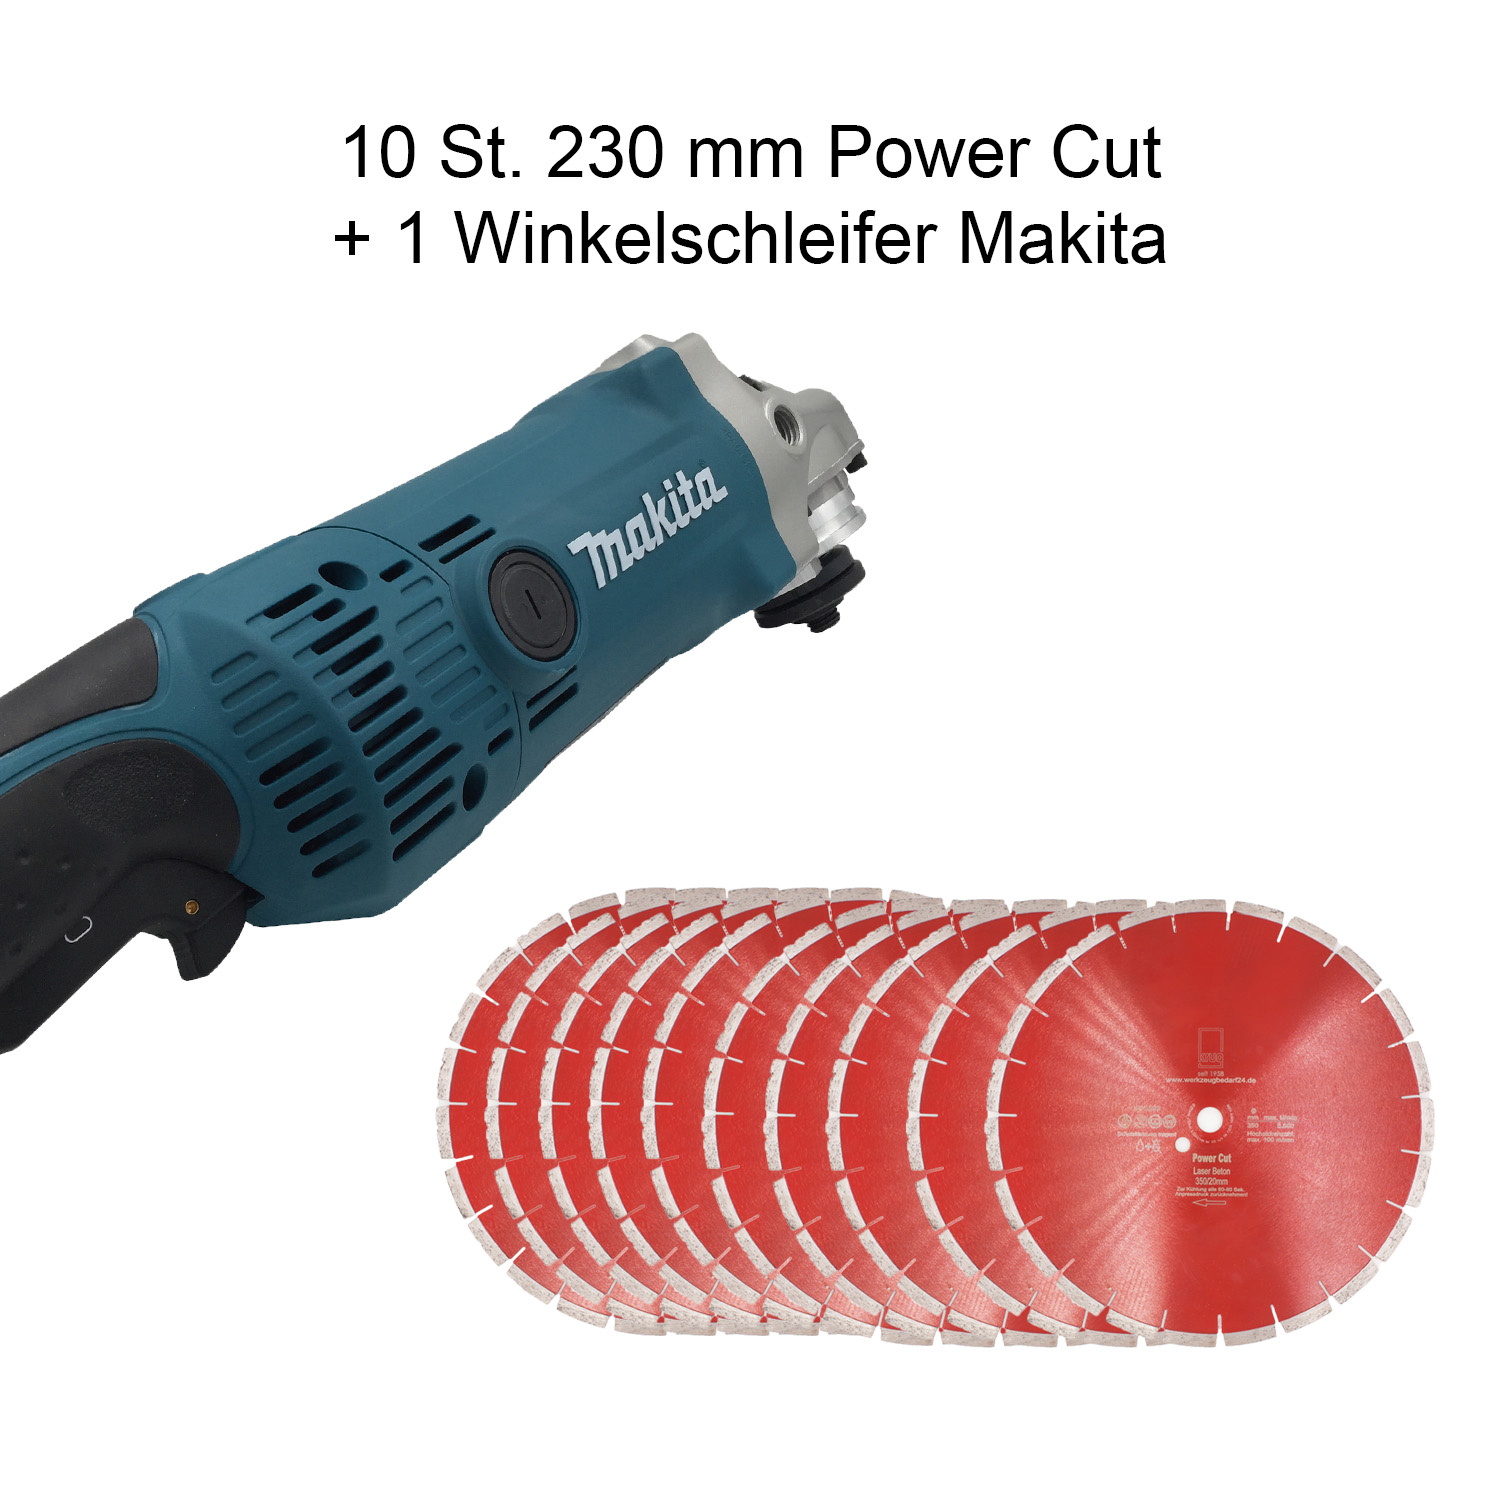 Set Makita Winkelschleifer GA9050R + 10 Stück Diamanttrennscheibe Power Cut 230 mm